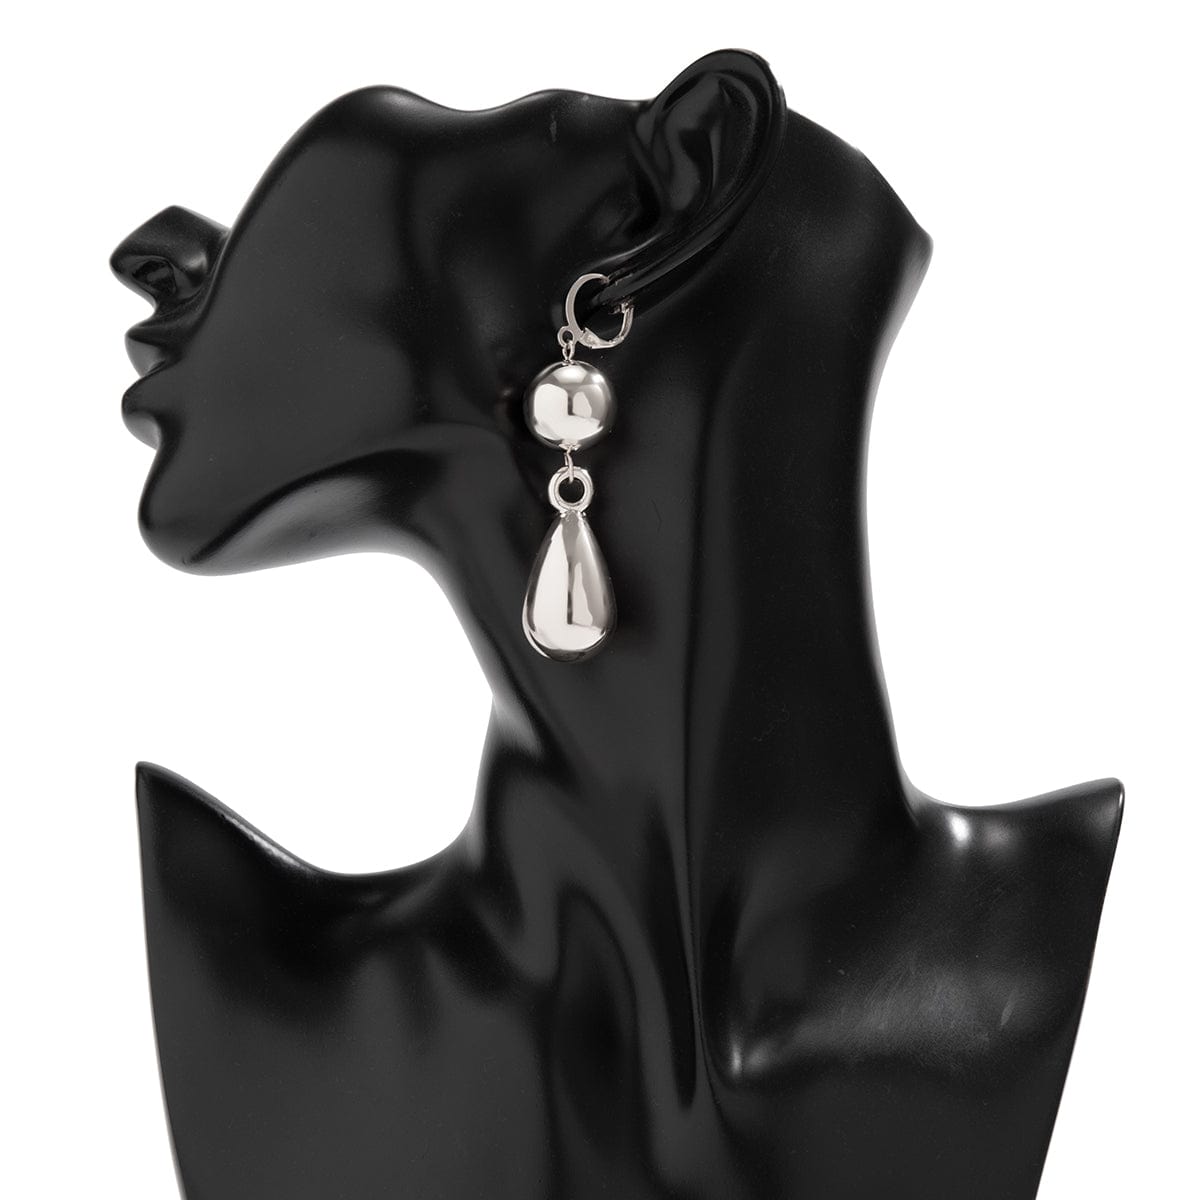 Elegant Gold Silver Plated Dangling Waterdrop Earrings - ArtGalleryZen